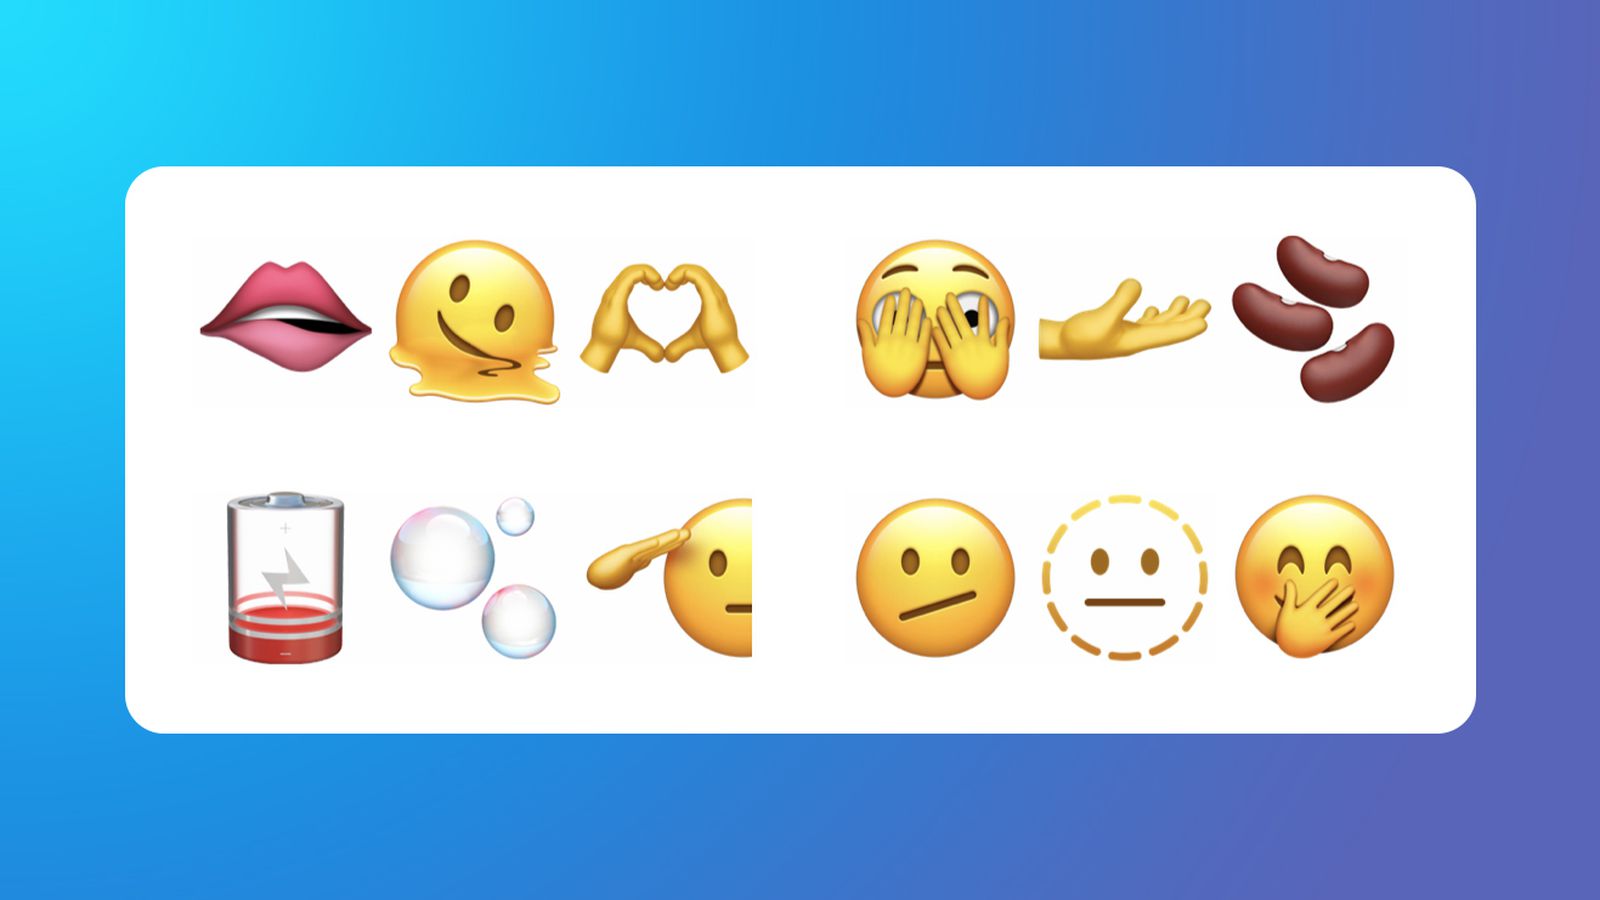 Bạn mong muốn trải nghiệm những tính năng mới trong phiên bản mới nhất của IOS? Hãy xem ngay hình ảnh về phiên bản IOS 15.4 New Emoji Font Emoji iPhone, để thấy rõ những tính năng mới cùng những biểu tượng cảm xúc độc đáo của nó. Điều này sẽ giúp bạn có một trải nghiệm sử dụng thiết bị mới mẻ và thú vị hơn.